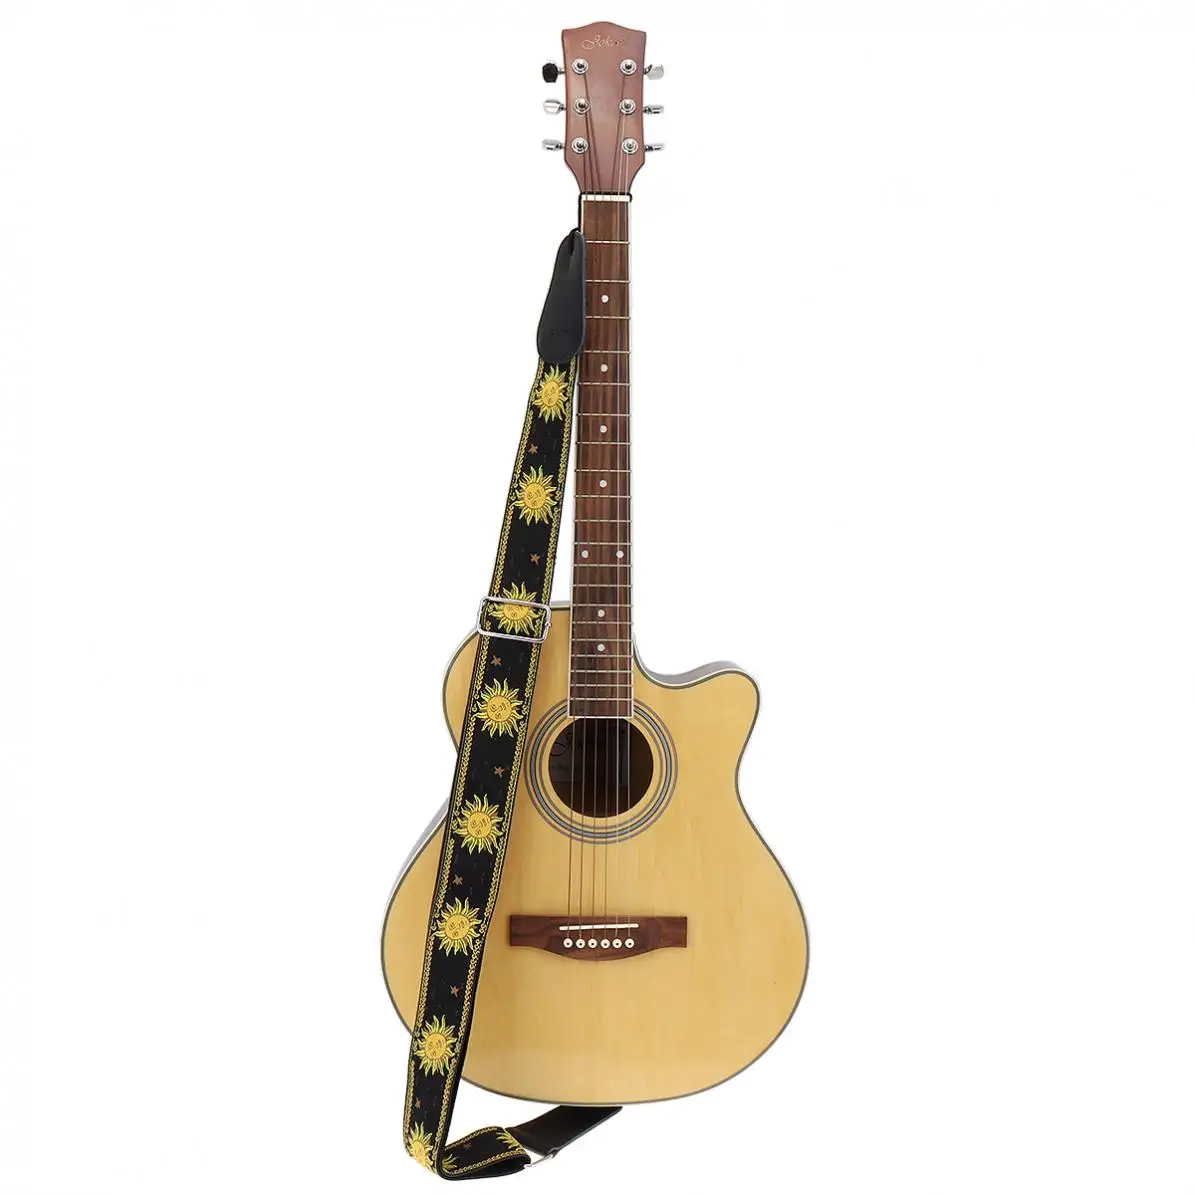 Ayarlanabilir 110-168cm uzunluk Gitar Askısı Çift Kumaş Güneş Çiçek Desen Hakiki deri kemer Gitarist Enstrüman Parçaları Görüntü  1